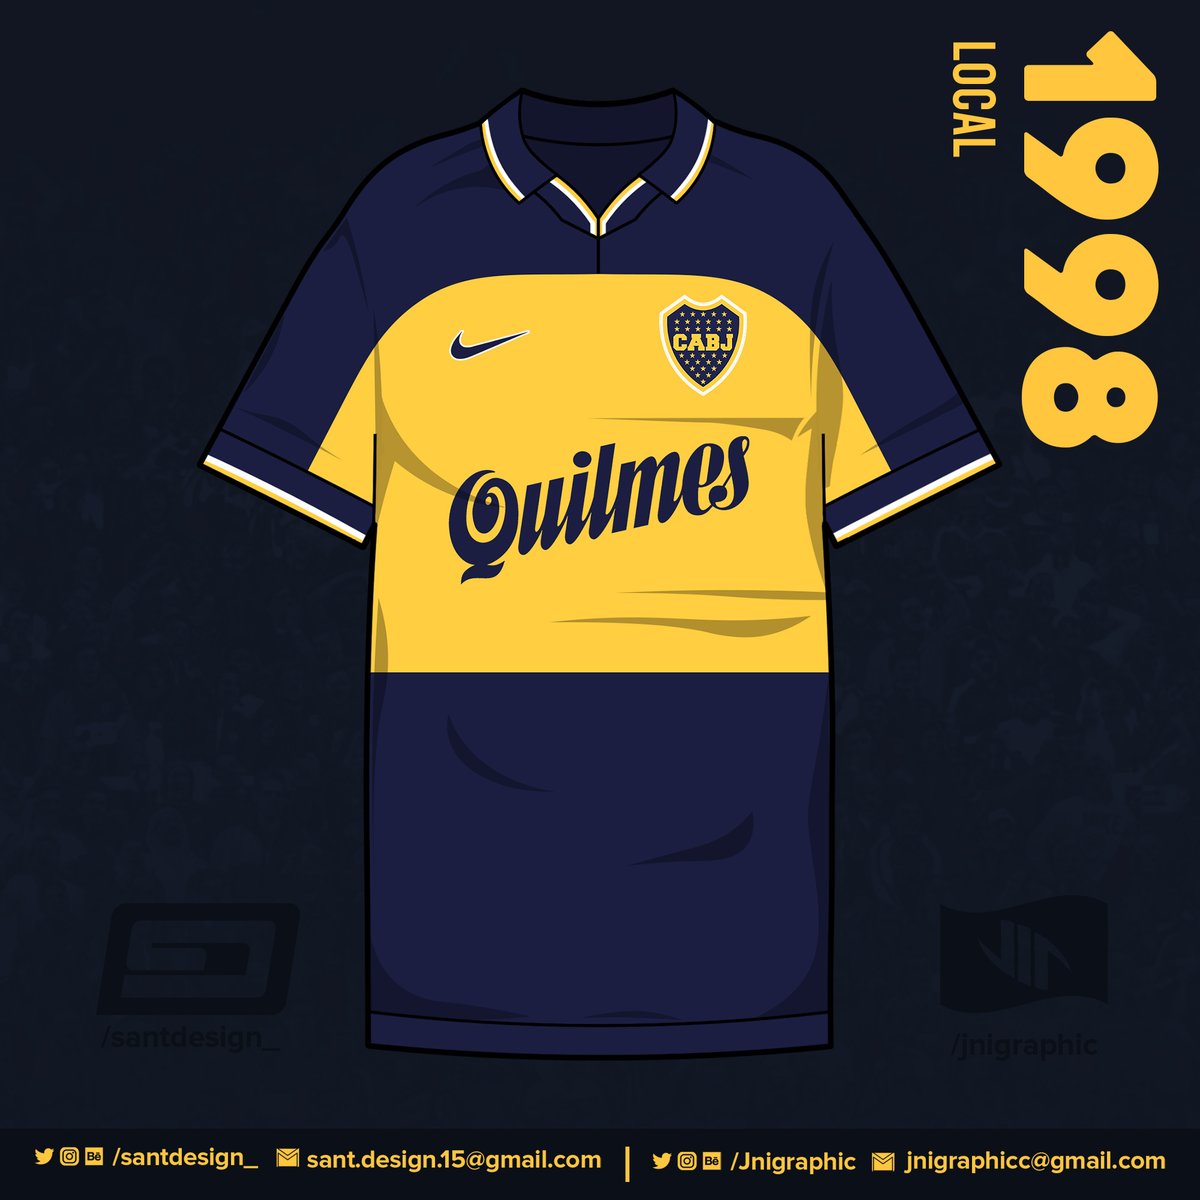 1998: Nuevos modelos en el club; con estos Boca gana el Apertura 98 y el Clausura 99.1999: Para la Copa Mercosur de este año, Nike presenta un modelo igual al de 1998 pero de color amarillo.